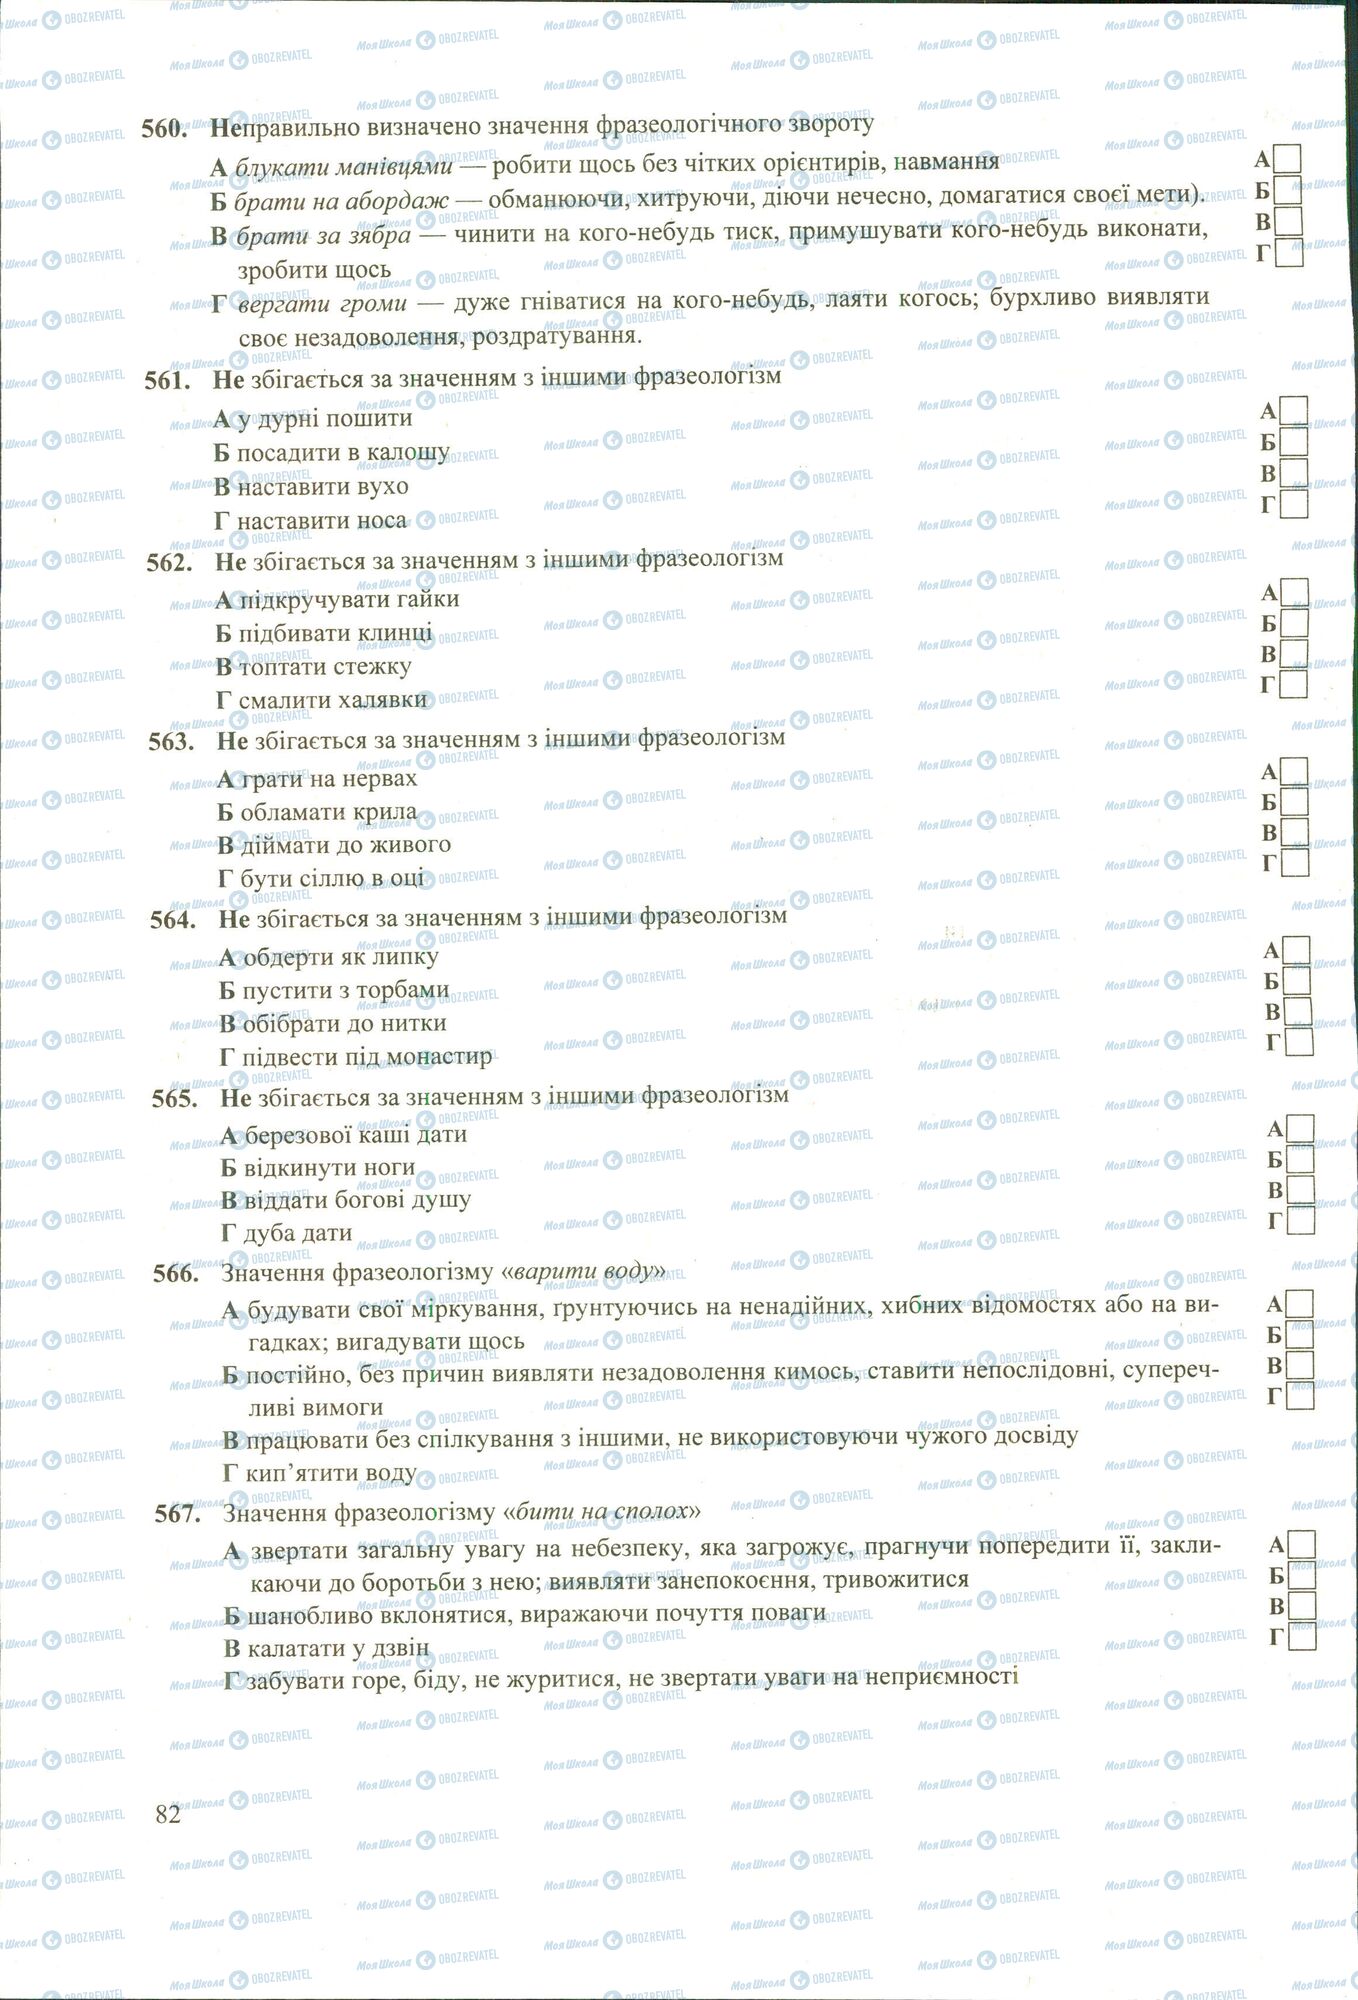 ЗНО Укр мова 11 класс страница 560-567